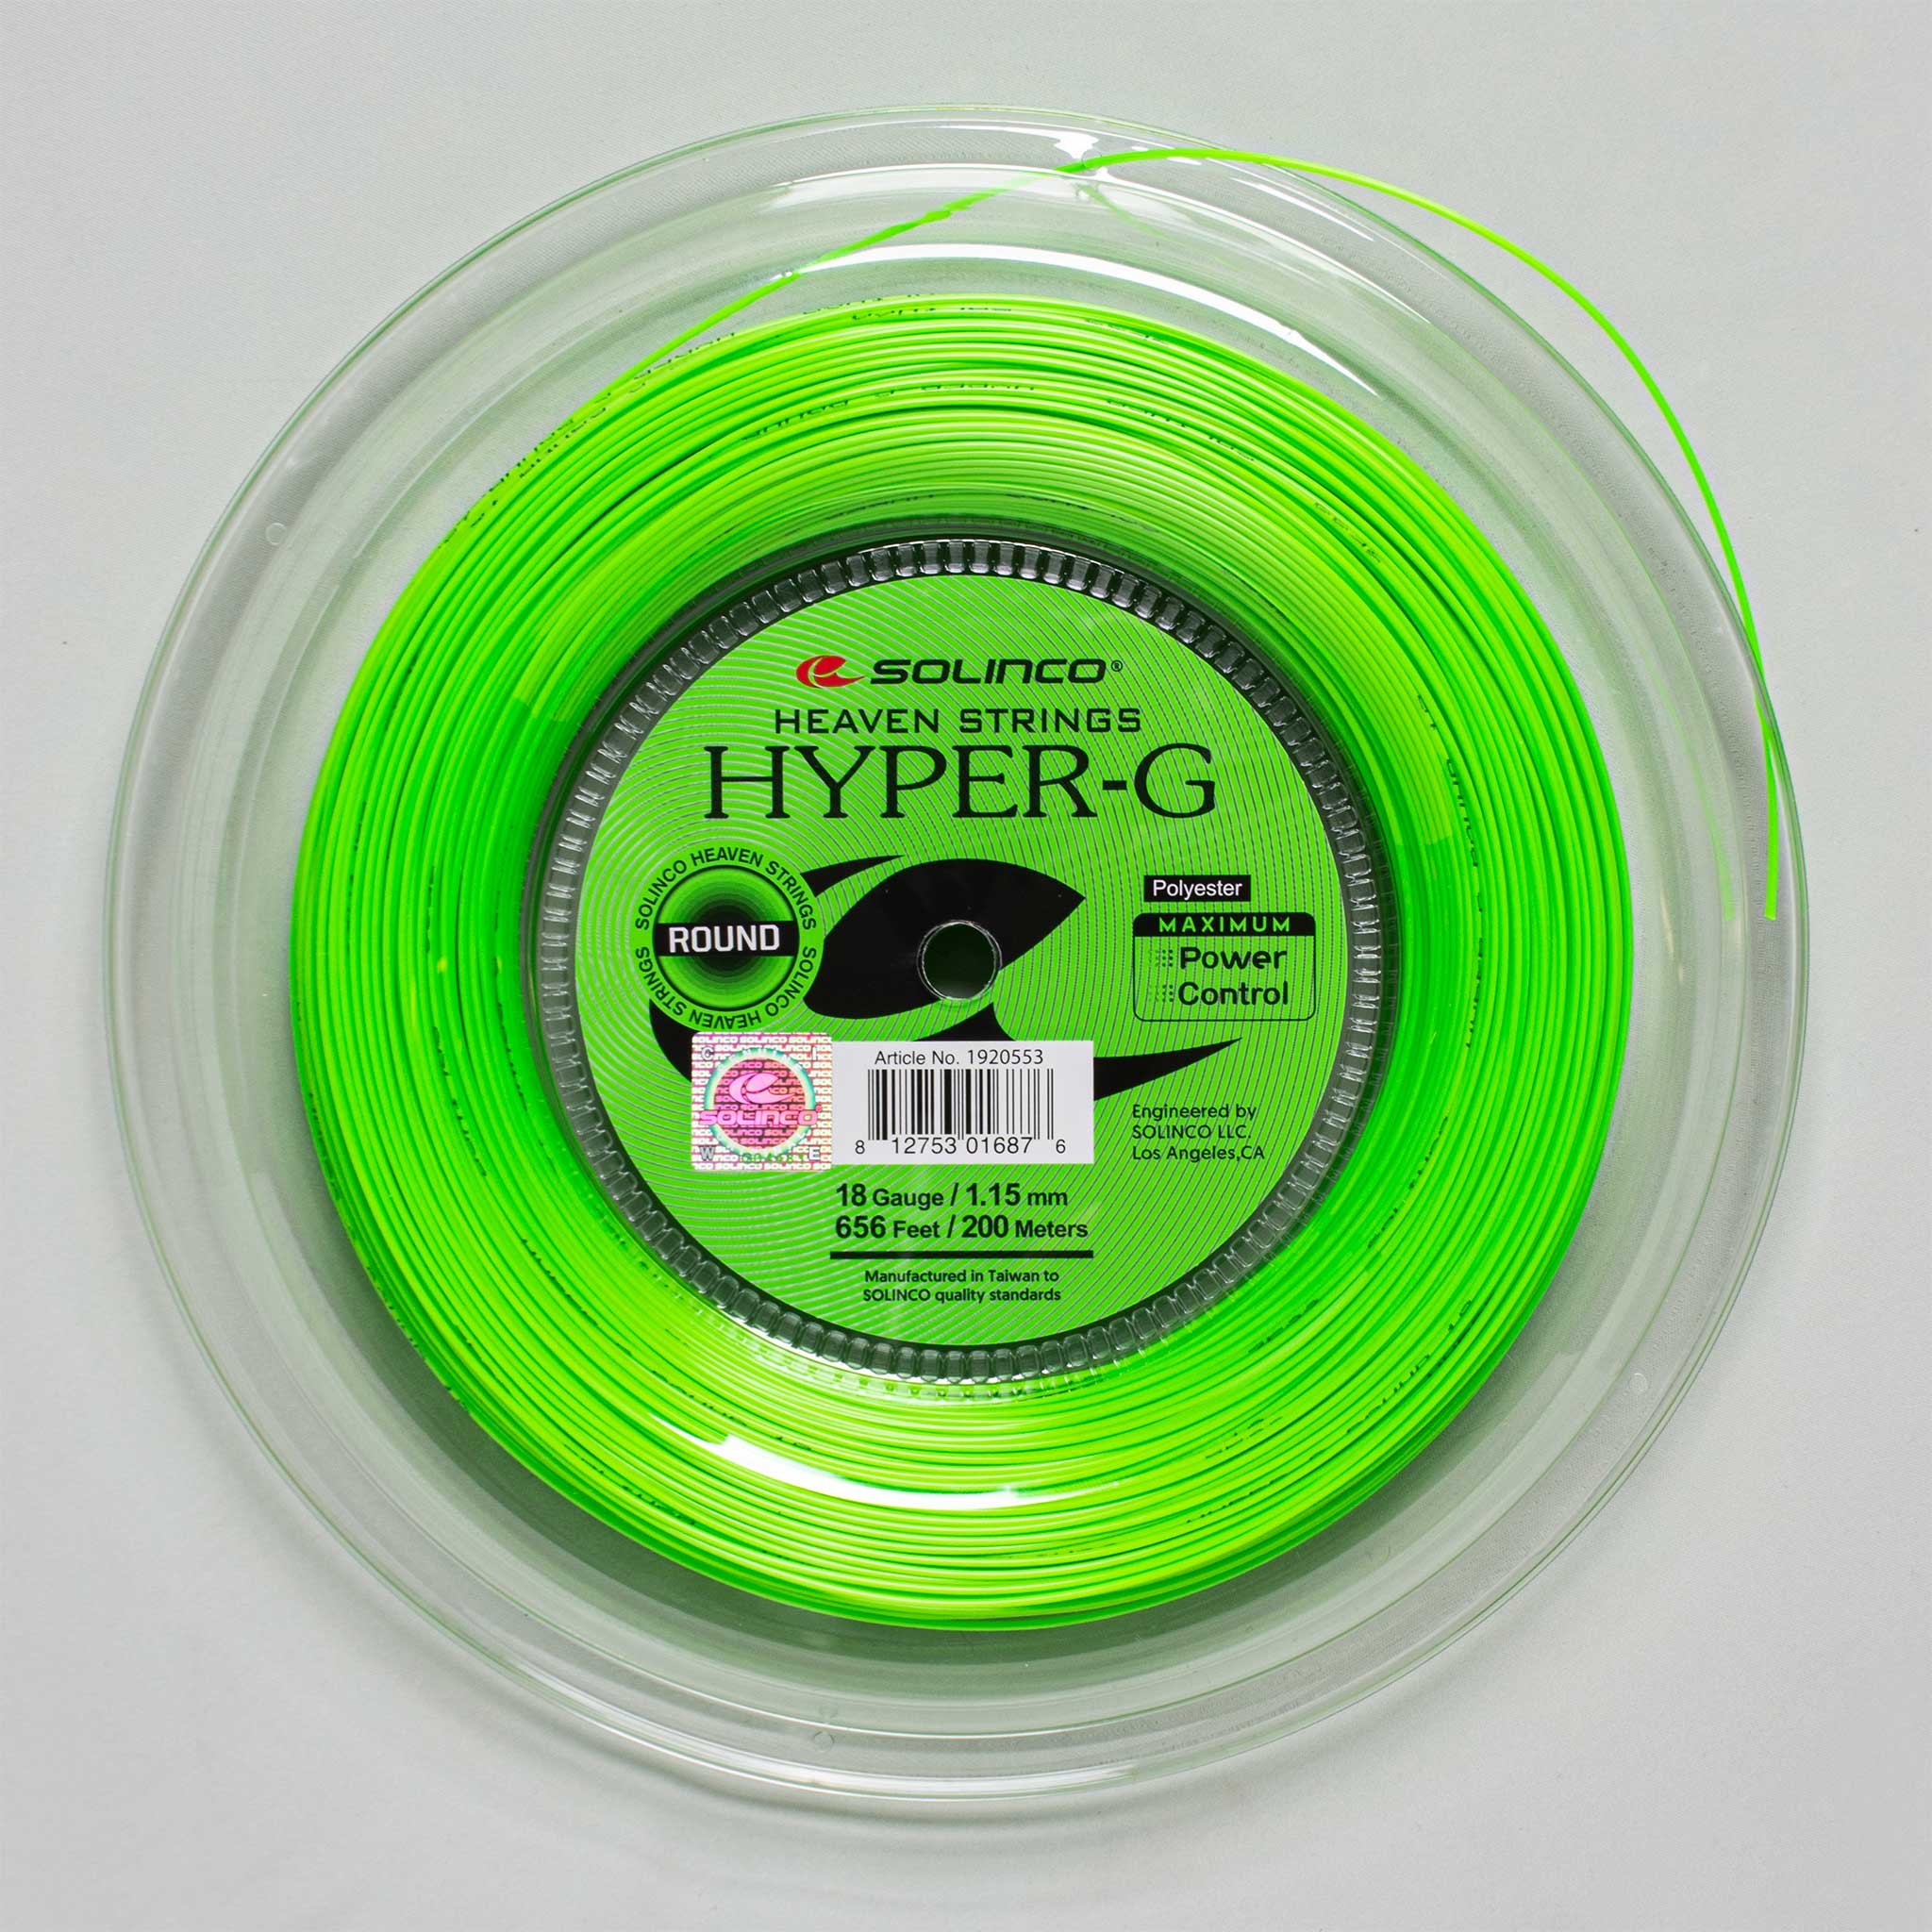 Solinco Hyper-G Round 18 1.15 660' Reel